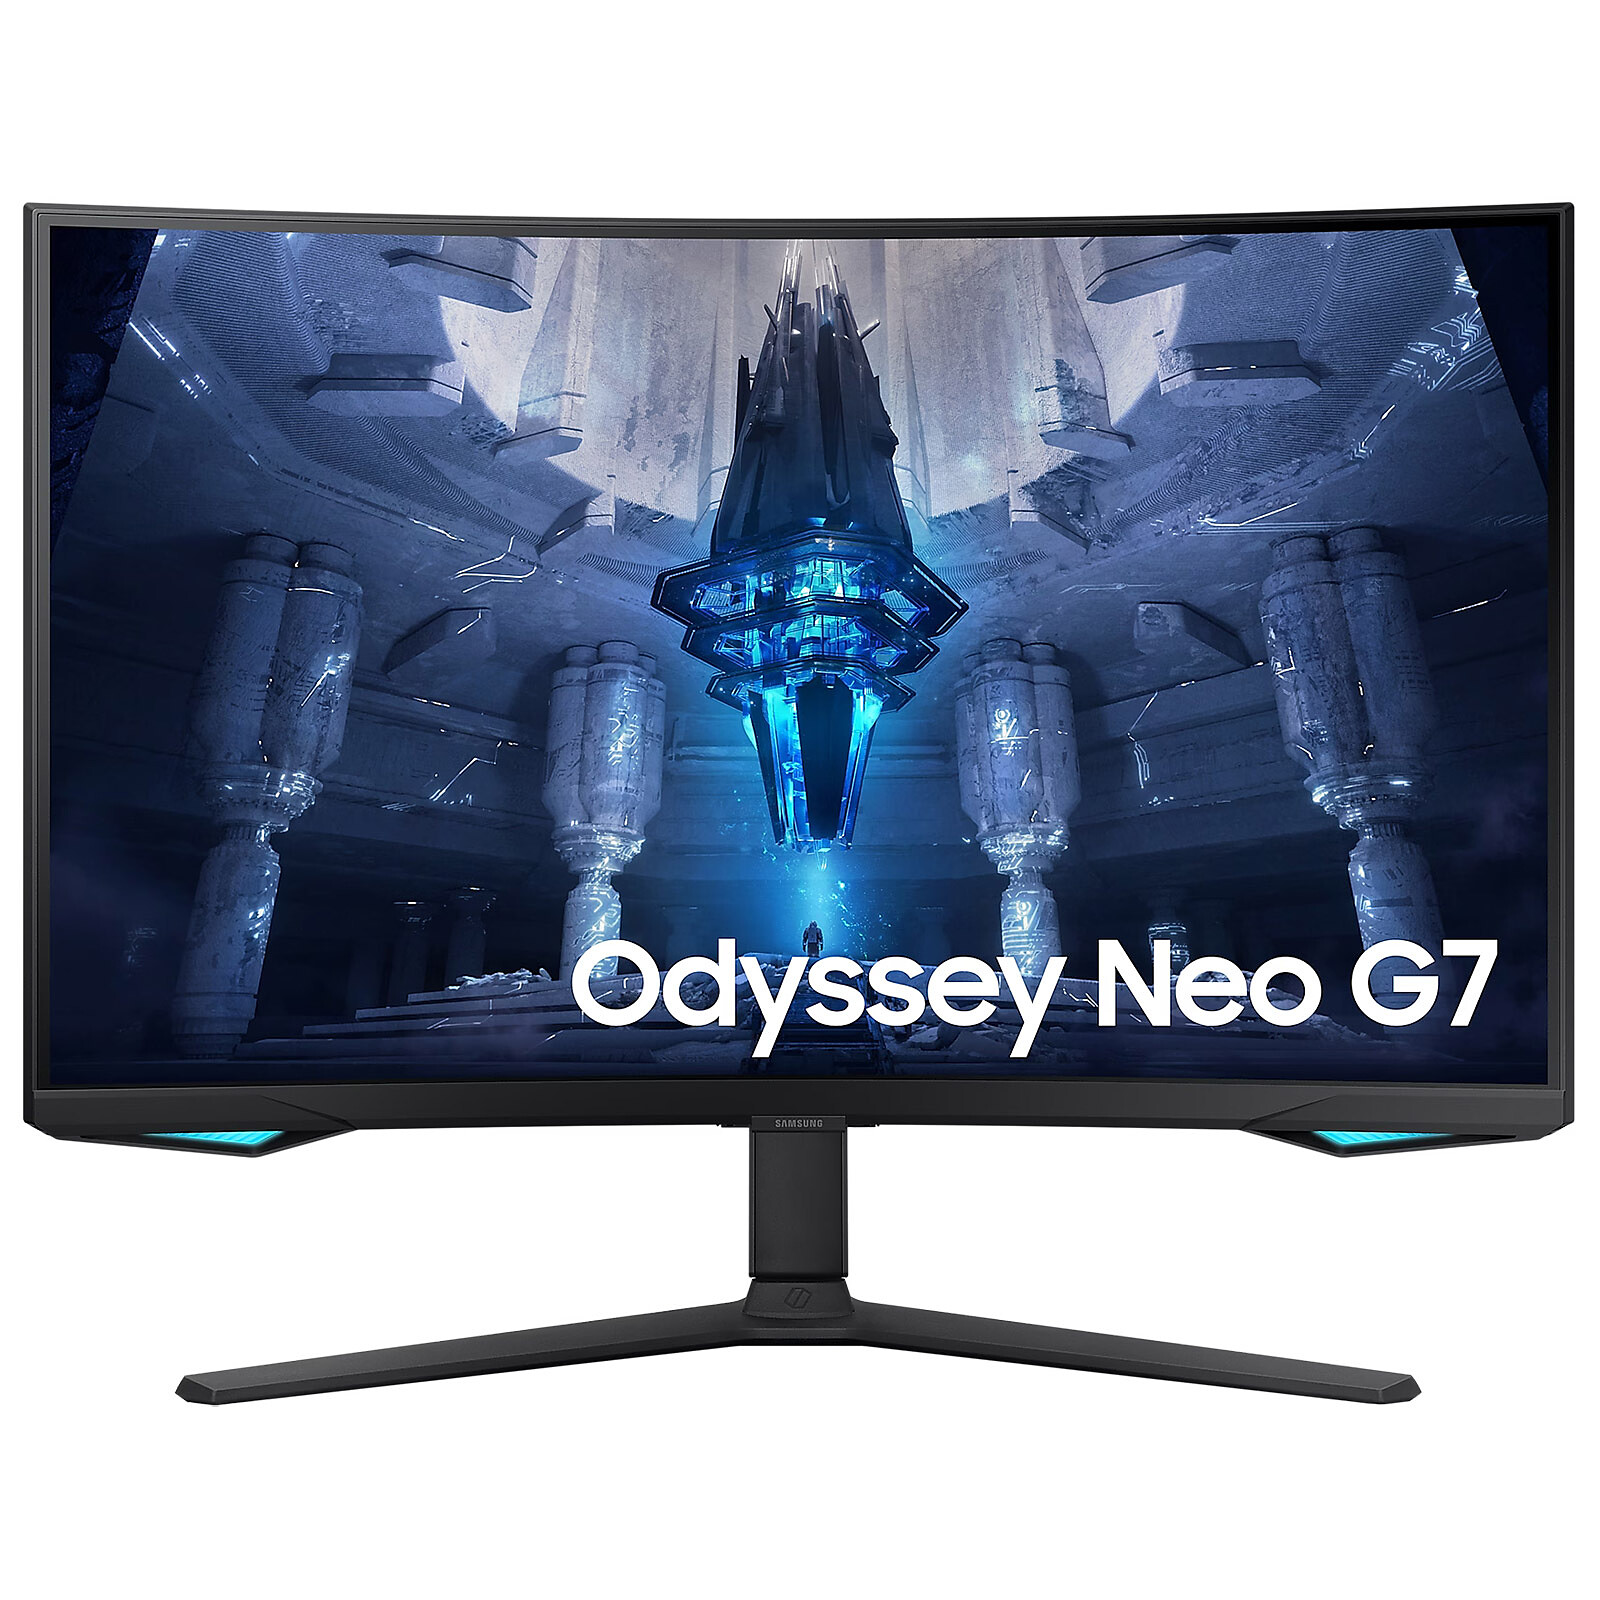 Test Odyssey Neo G7 Mini-Led : notre avis complet sur l'écran PC